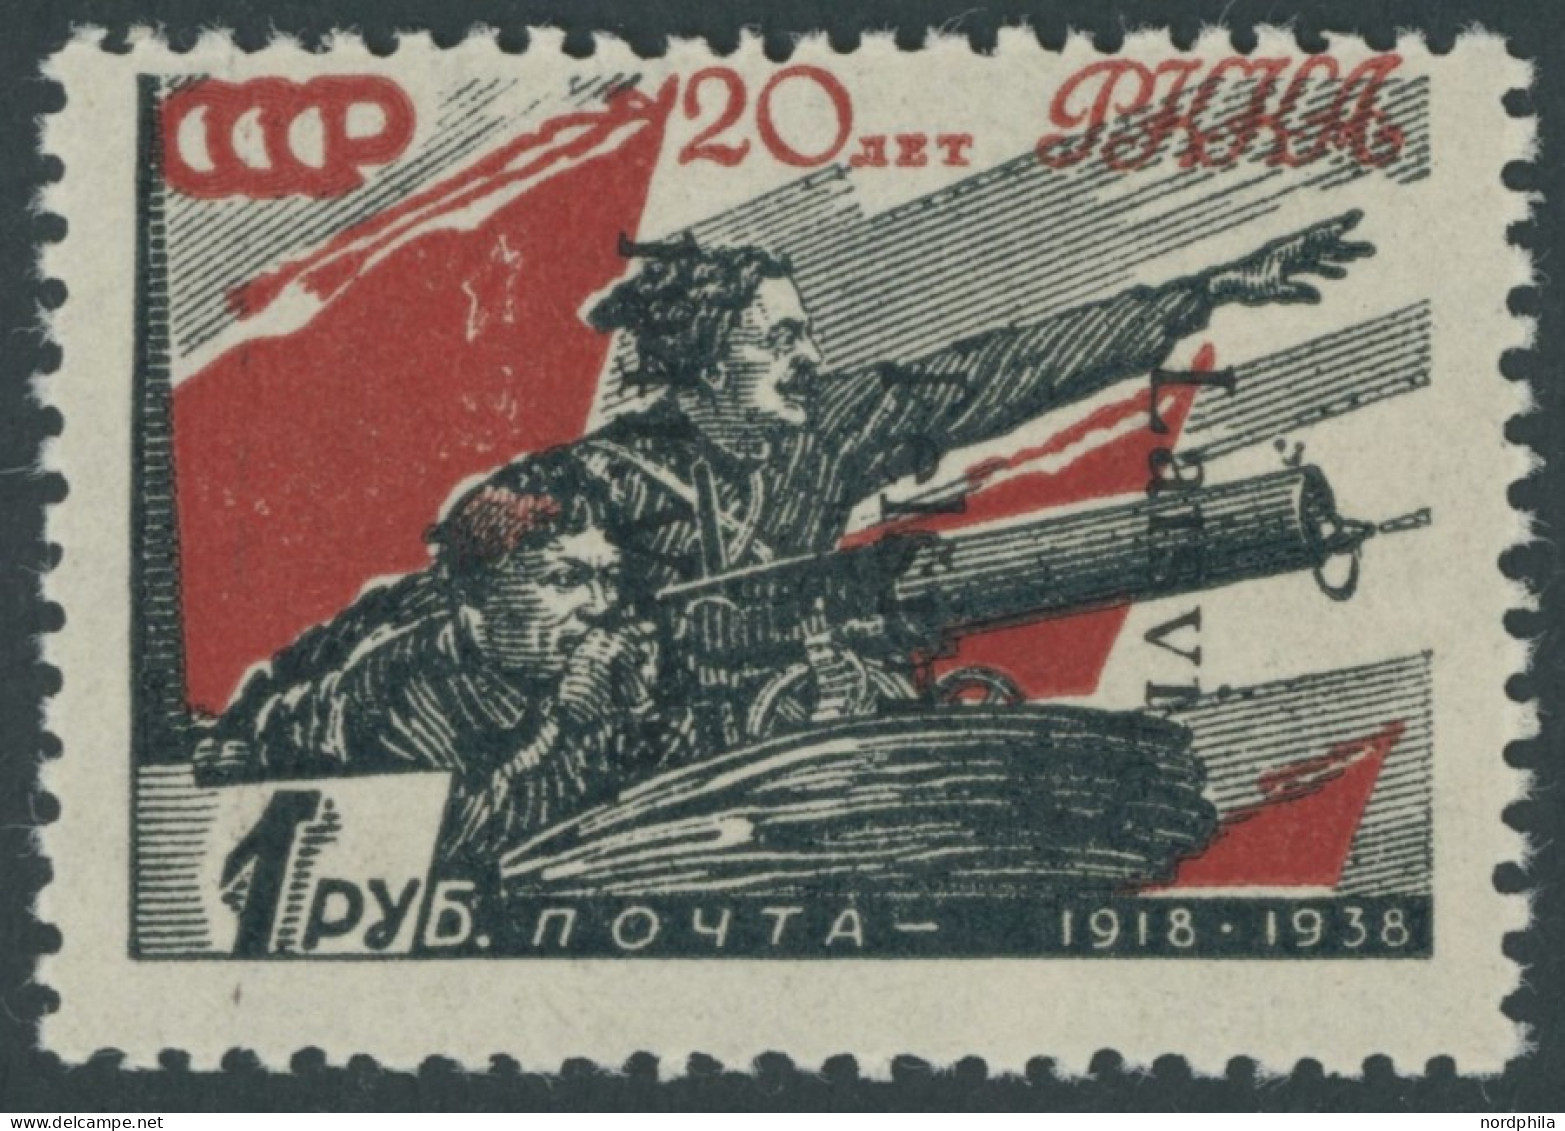 TELSCHEN 10IK , 1941, 80 K. Rote Armee, Type I Mit Aufdruck Von Oben Nach Unten (Feld 34), Postfrisch, Pracht, RR!, Foto - Occupation 1938-45